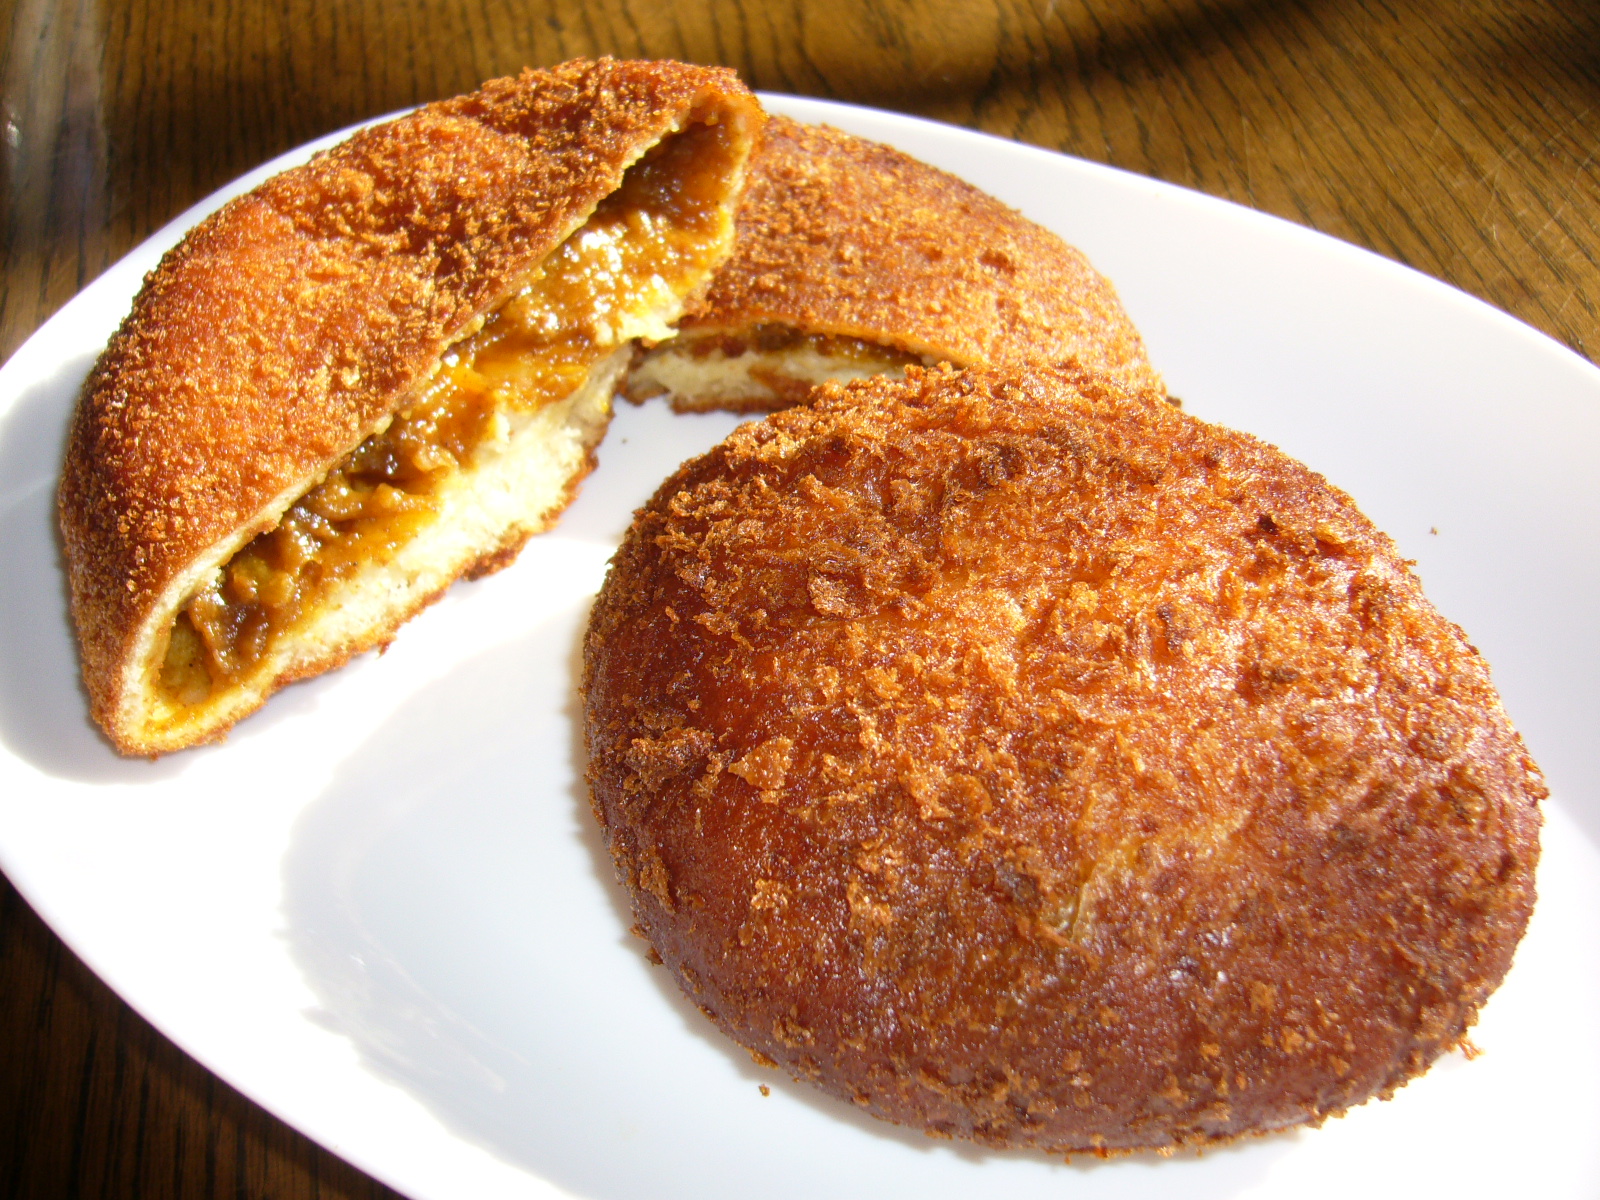 咖喱面包也是日本人民的创造.图片:wikipedia